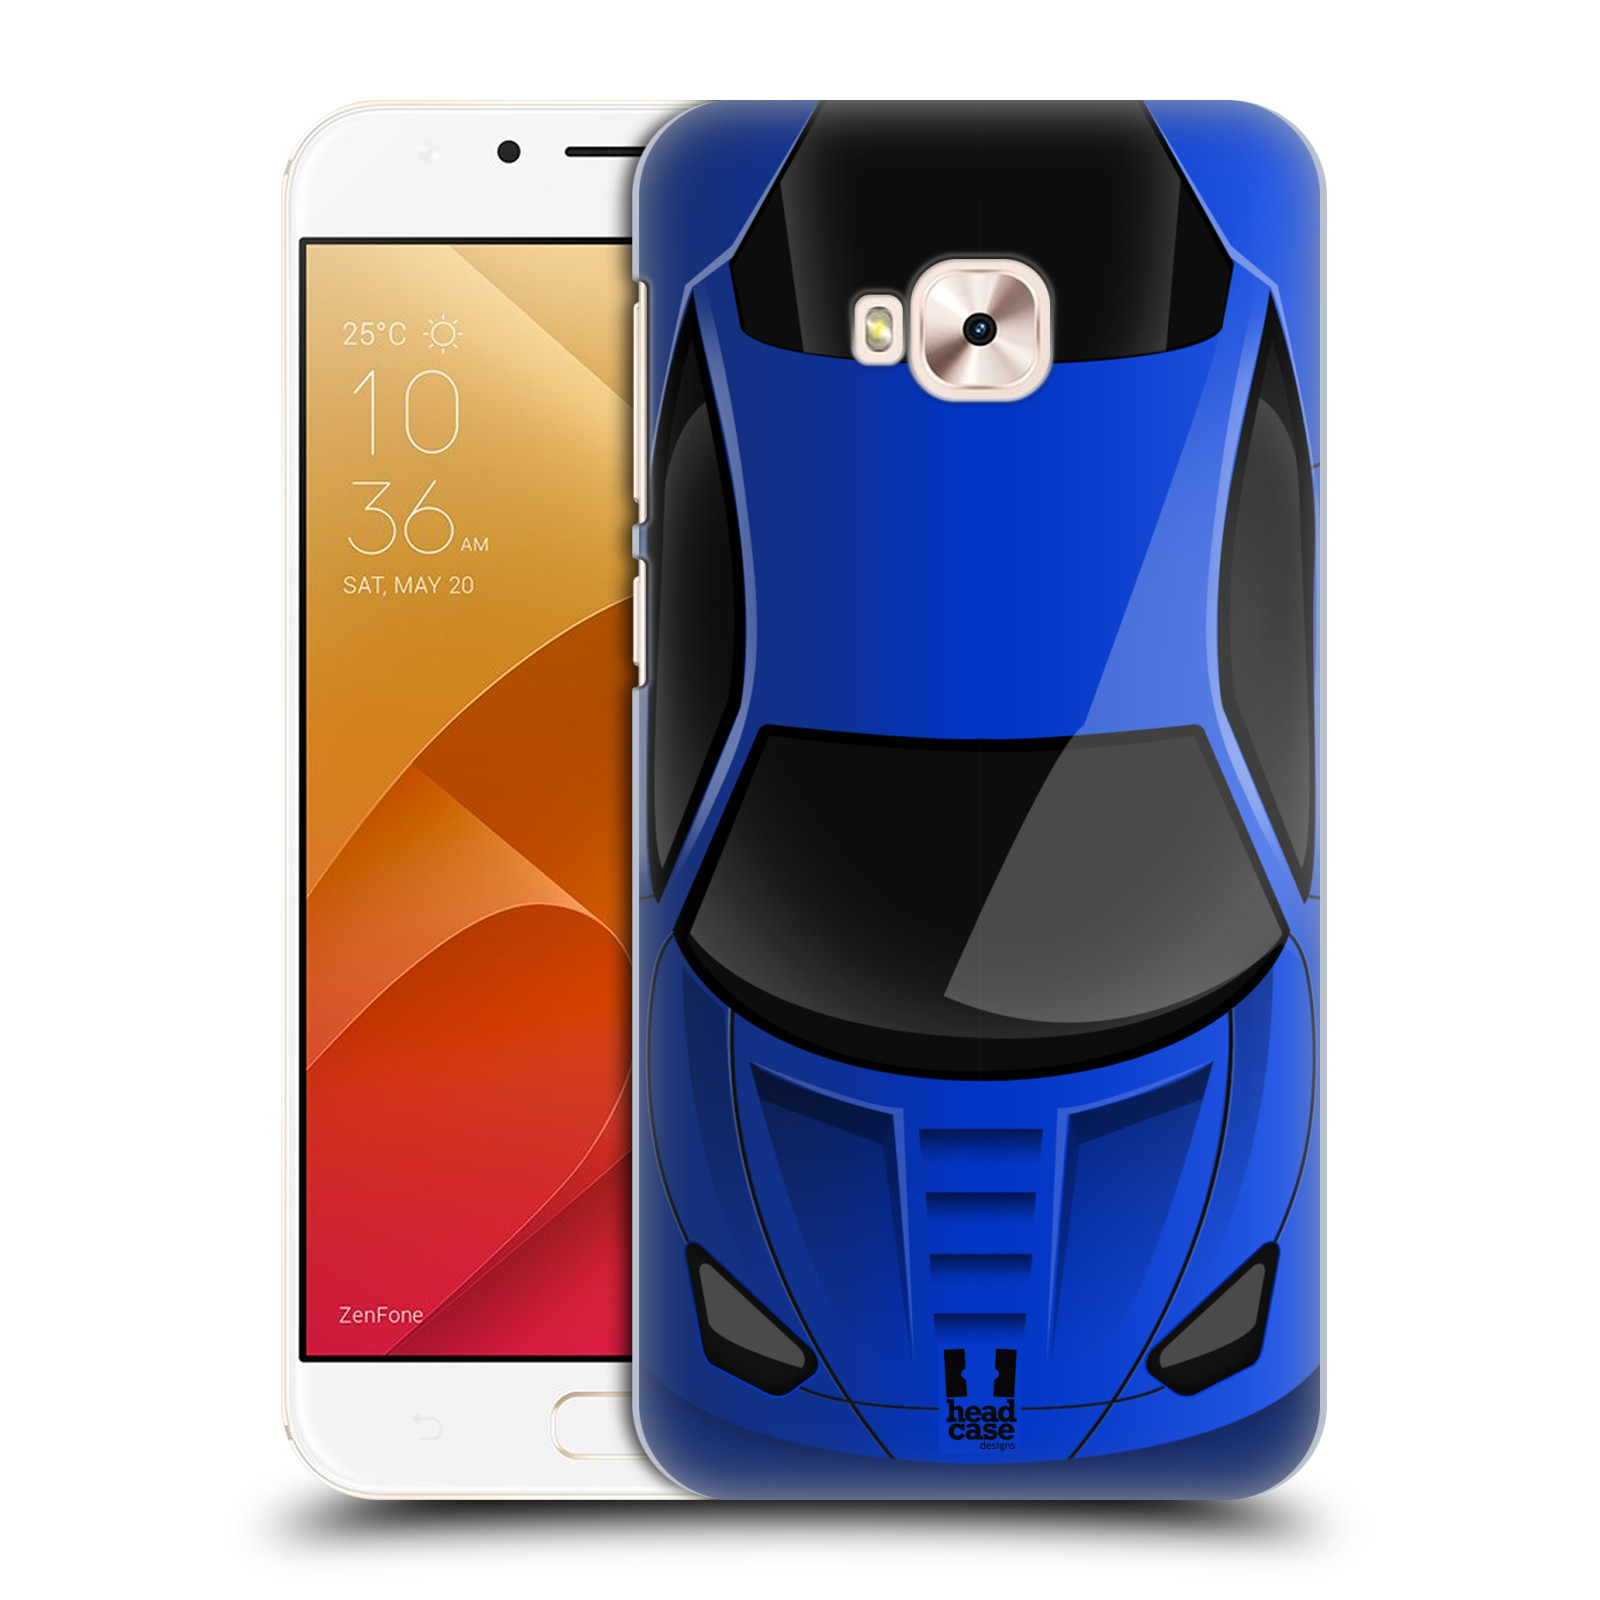 HEAD CASE plastový obal na mobil Asus Zenfone 4 Selfie Pro ZD552KL vzor Auto horní pohled modrá